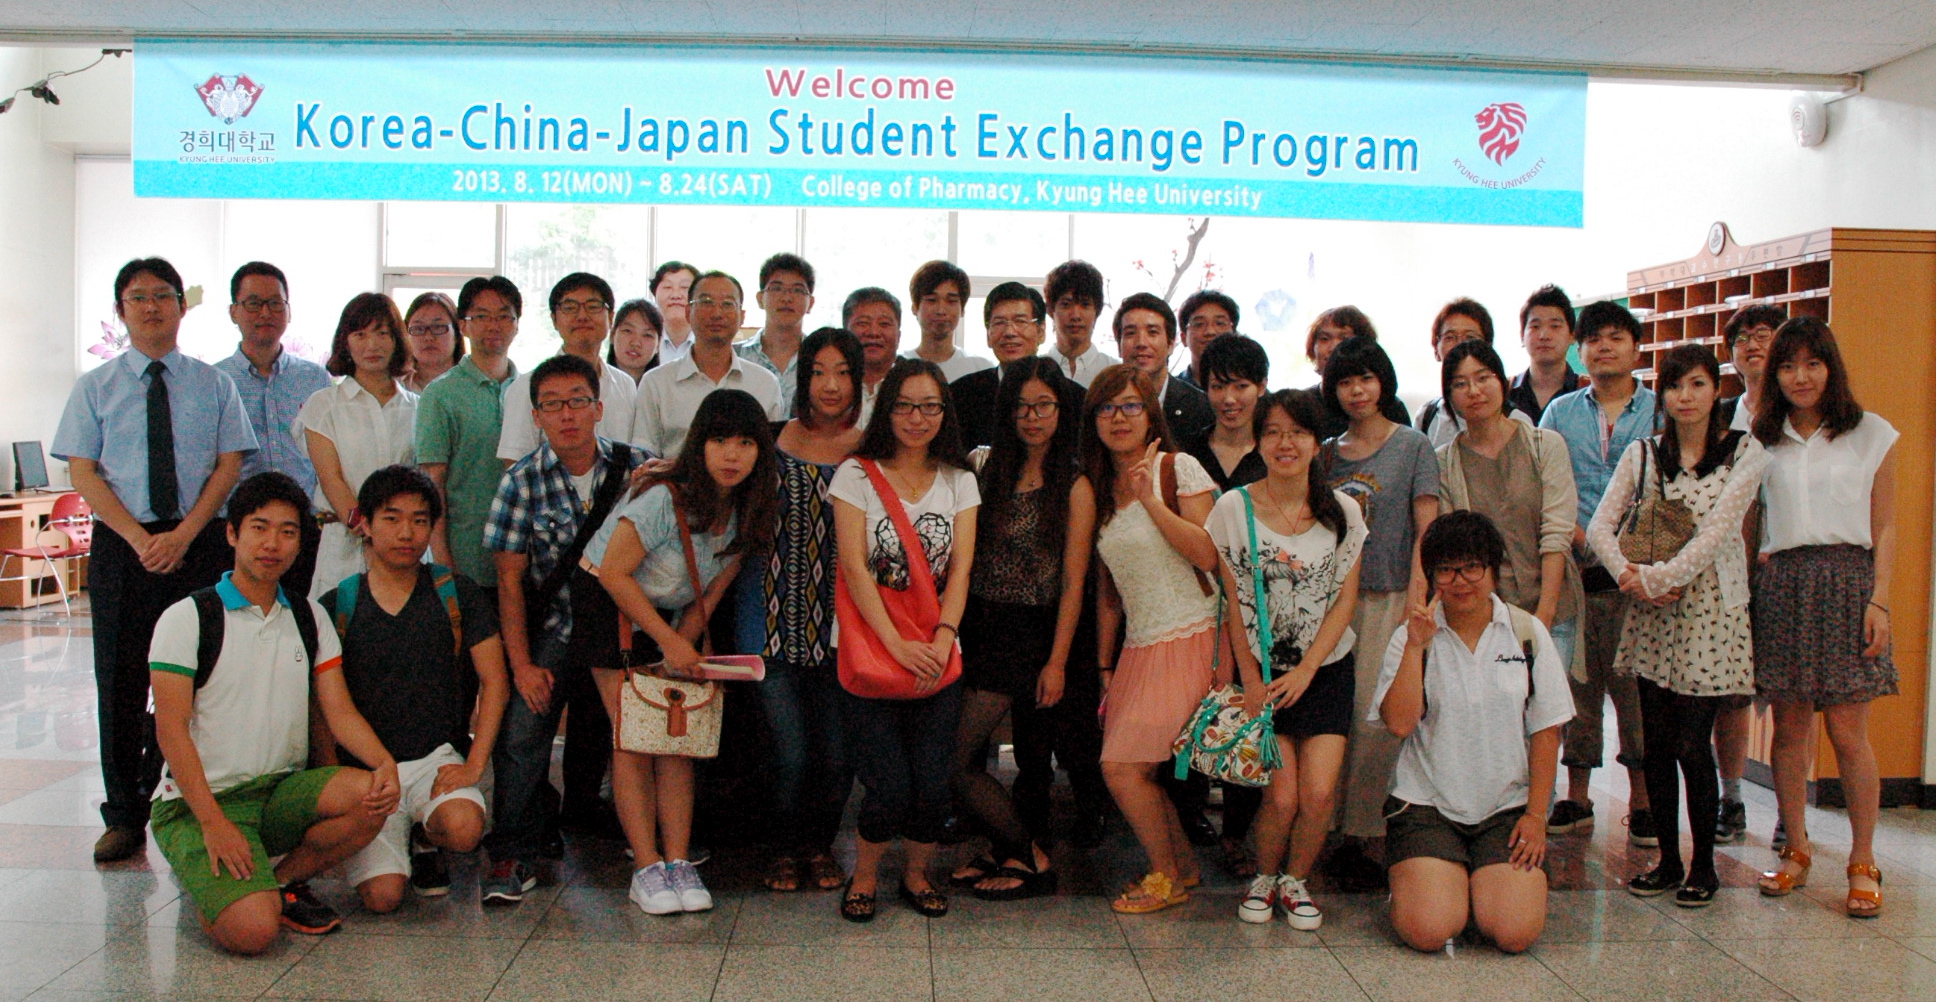 Đại học Hokuriku tổ chức chuyến đi cho sinh viên ngành khoa học dược phẩm tới Hàn Quốc và Trung Quốc